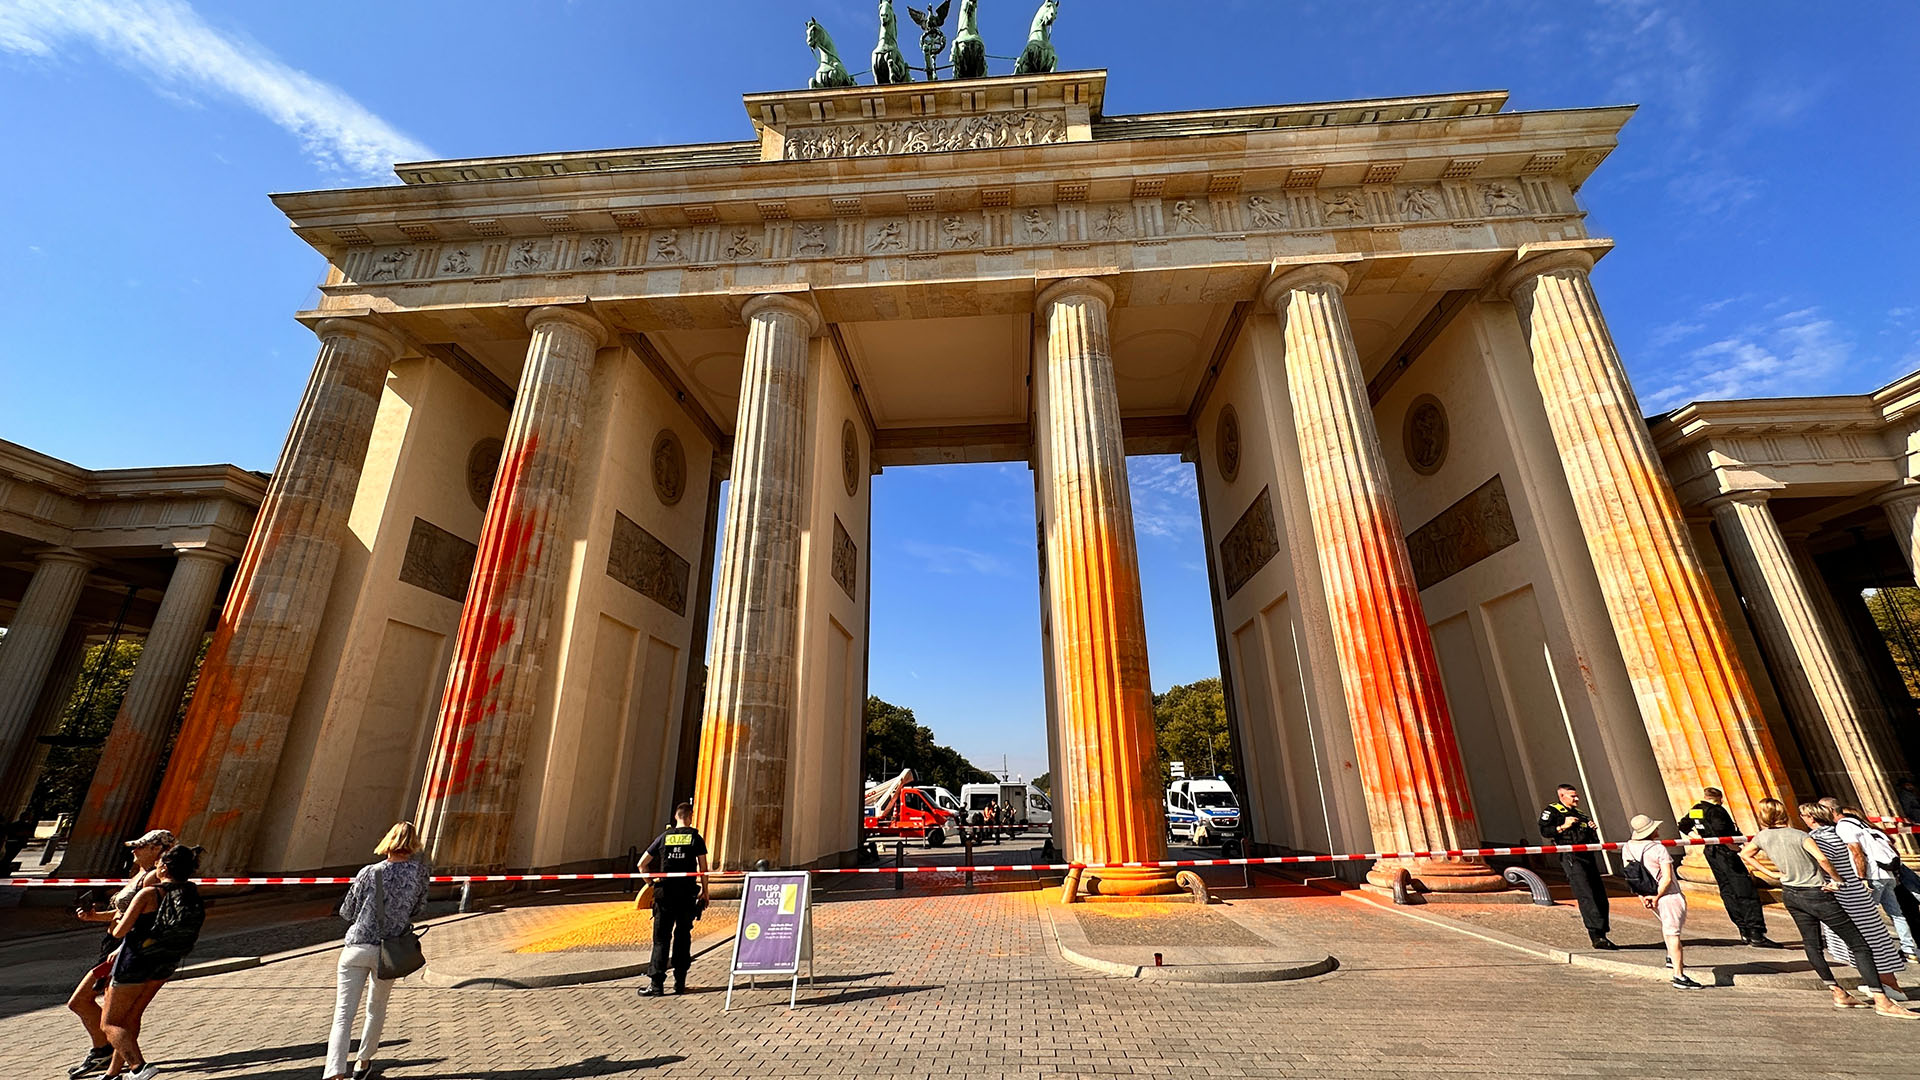 Archivbild: Mitglieder der Klimaschutzgruppe Letzte Generation haben das Brandenburger Tor in Berlin mit oranger Farbe angesprüht. (Quelle: dpa/Zinken)